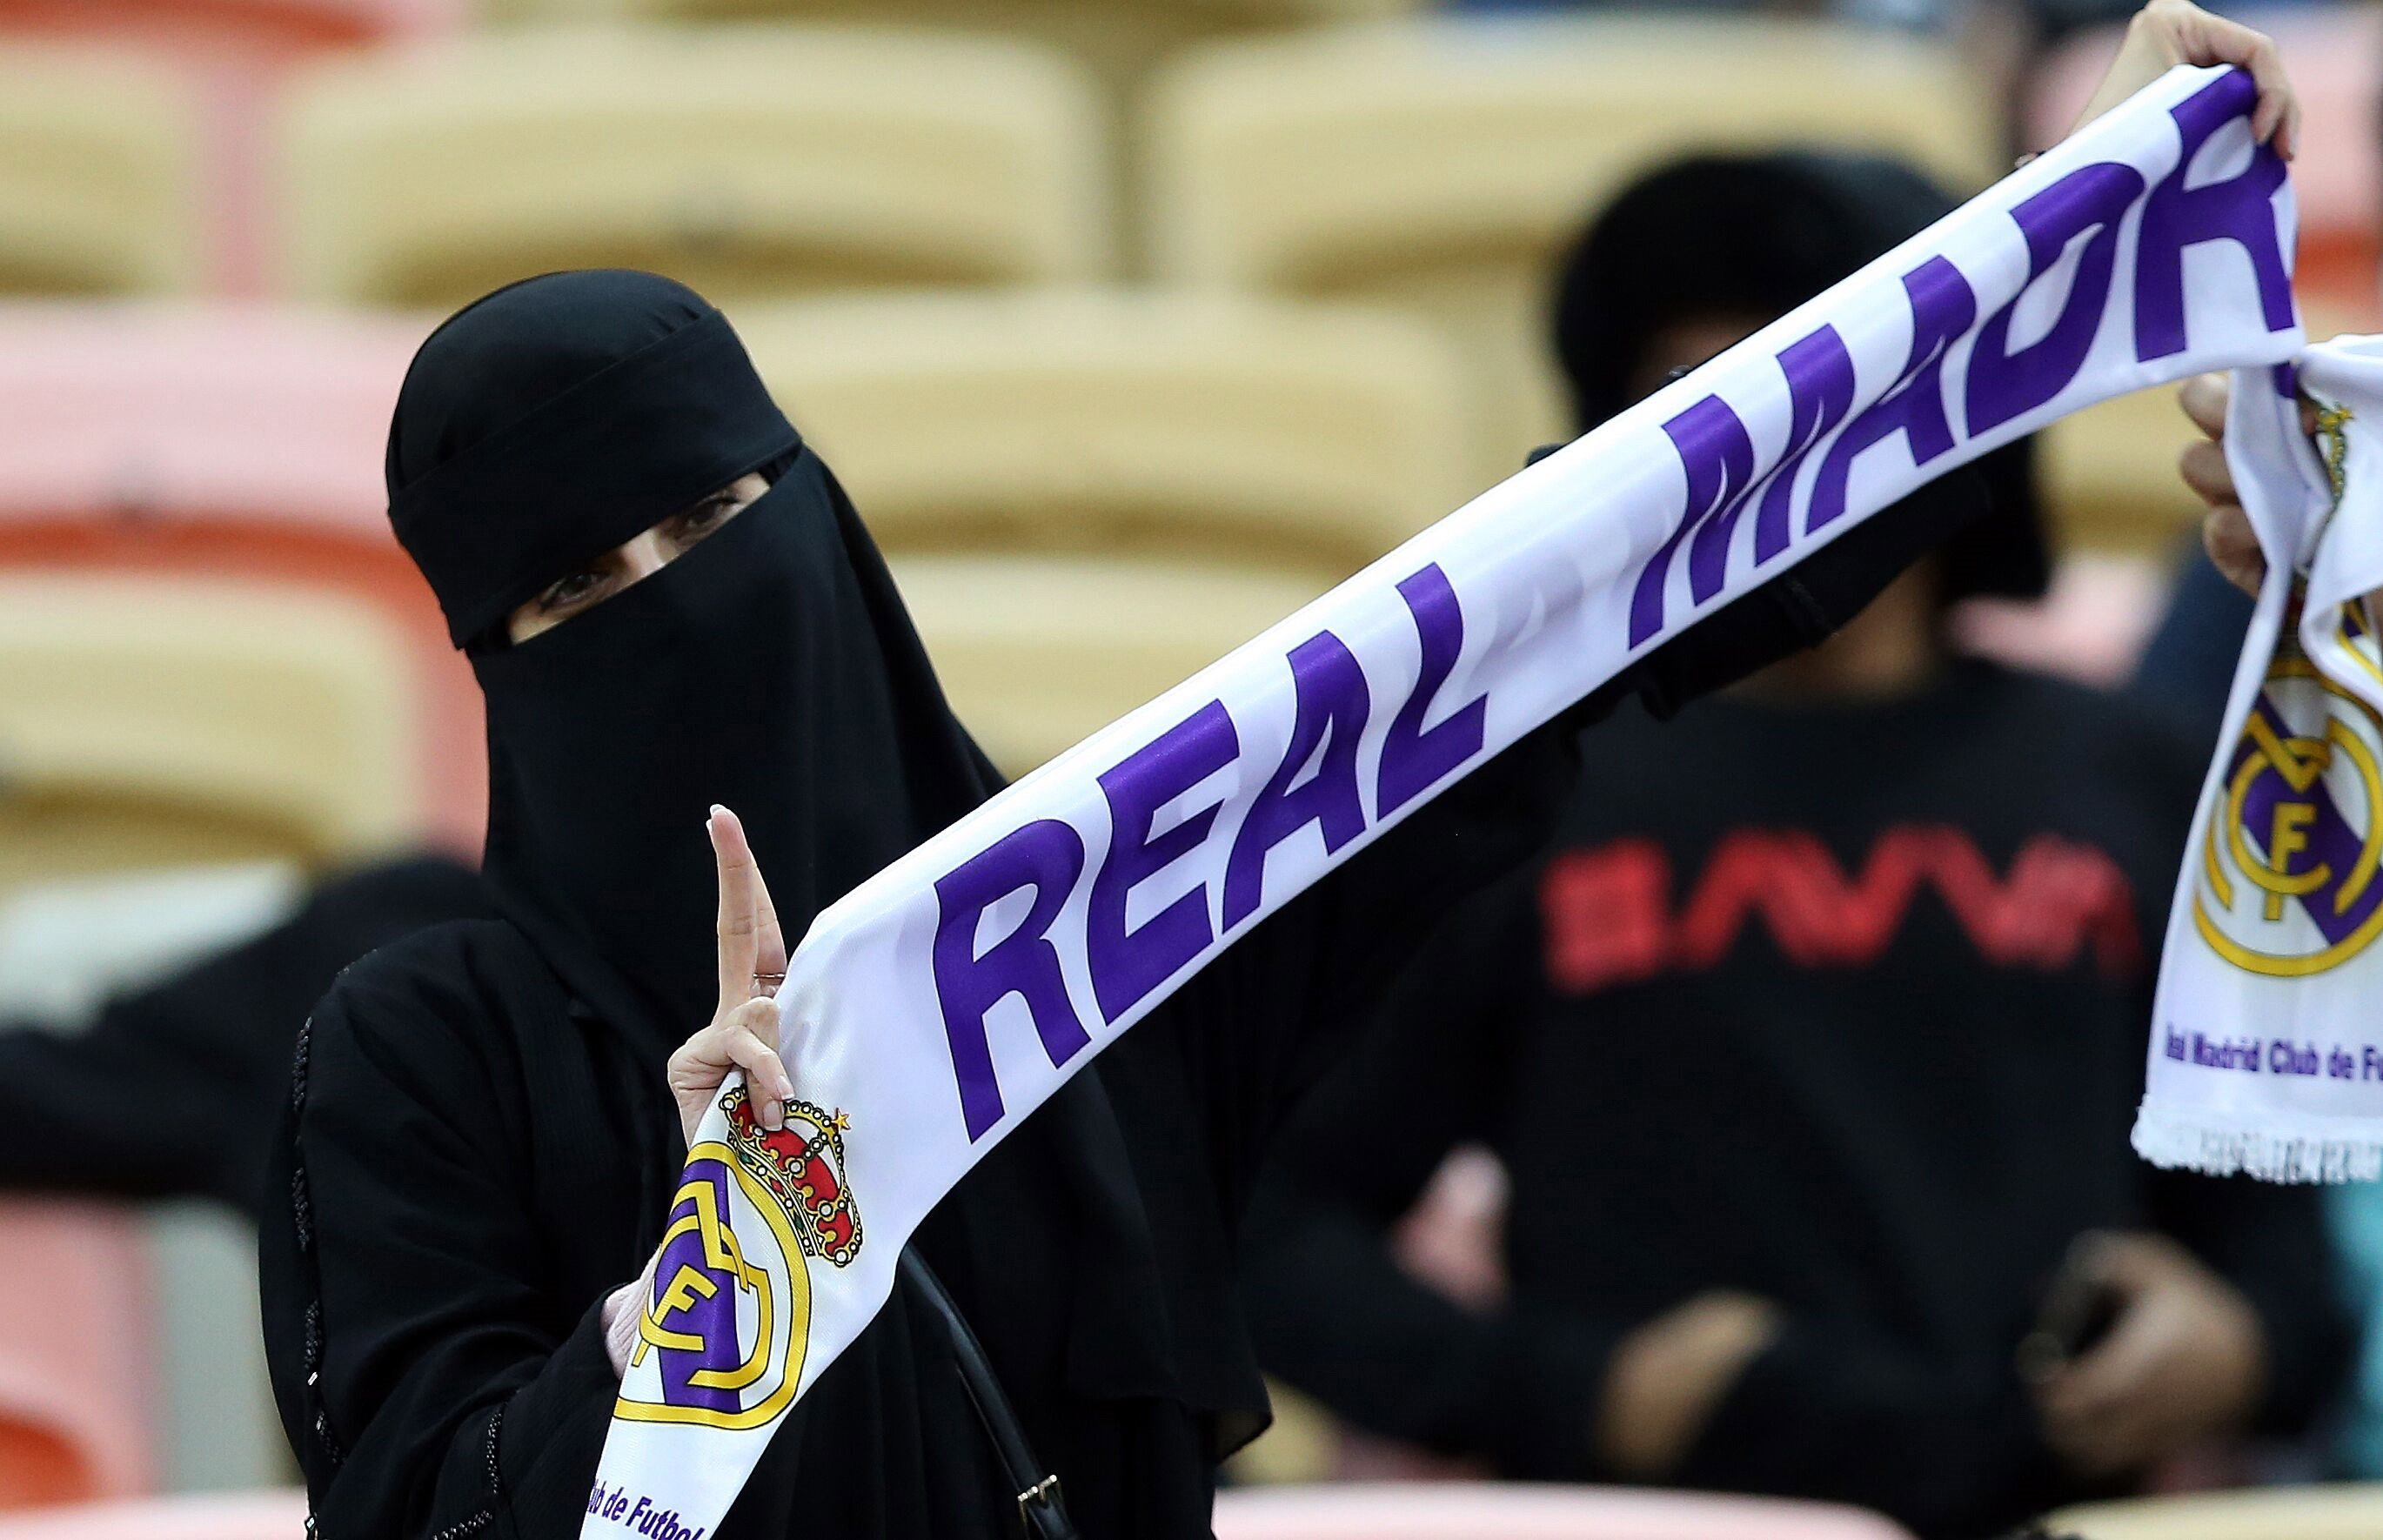 La realitat després de la Supercopa: l'Aràbia Saudita torna a apartar les dones